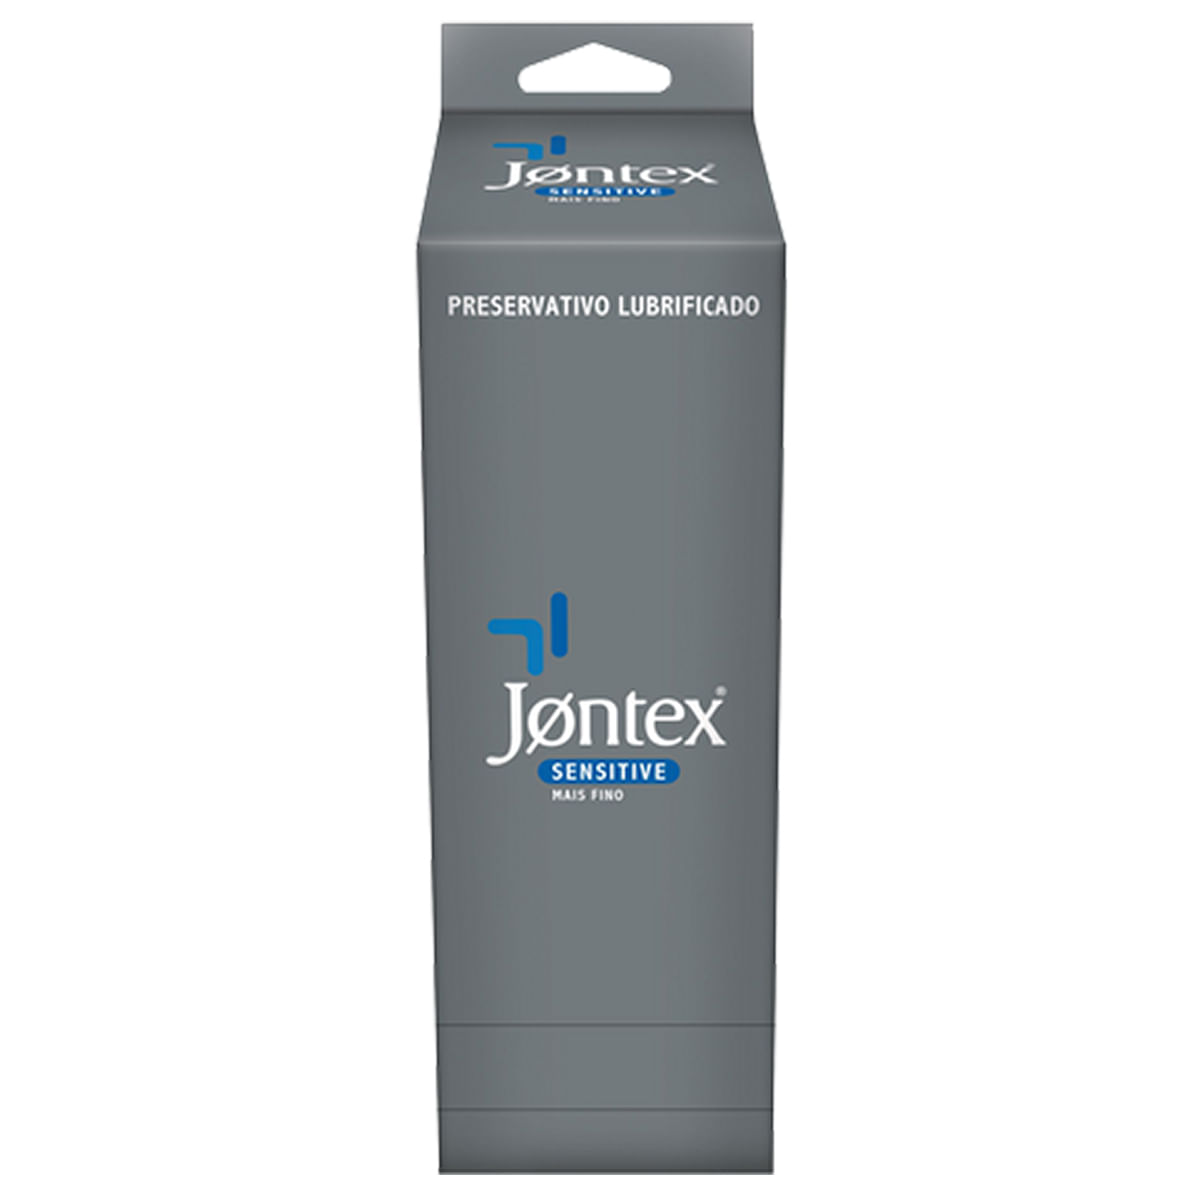 Preservativos Lubrificados Sensitive Mais Fino Kit com 36 unidades Jontex